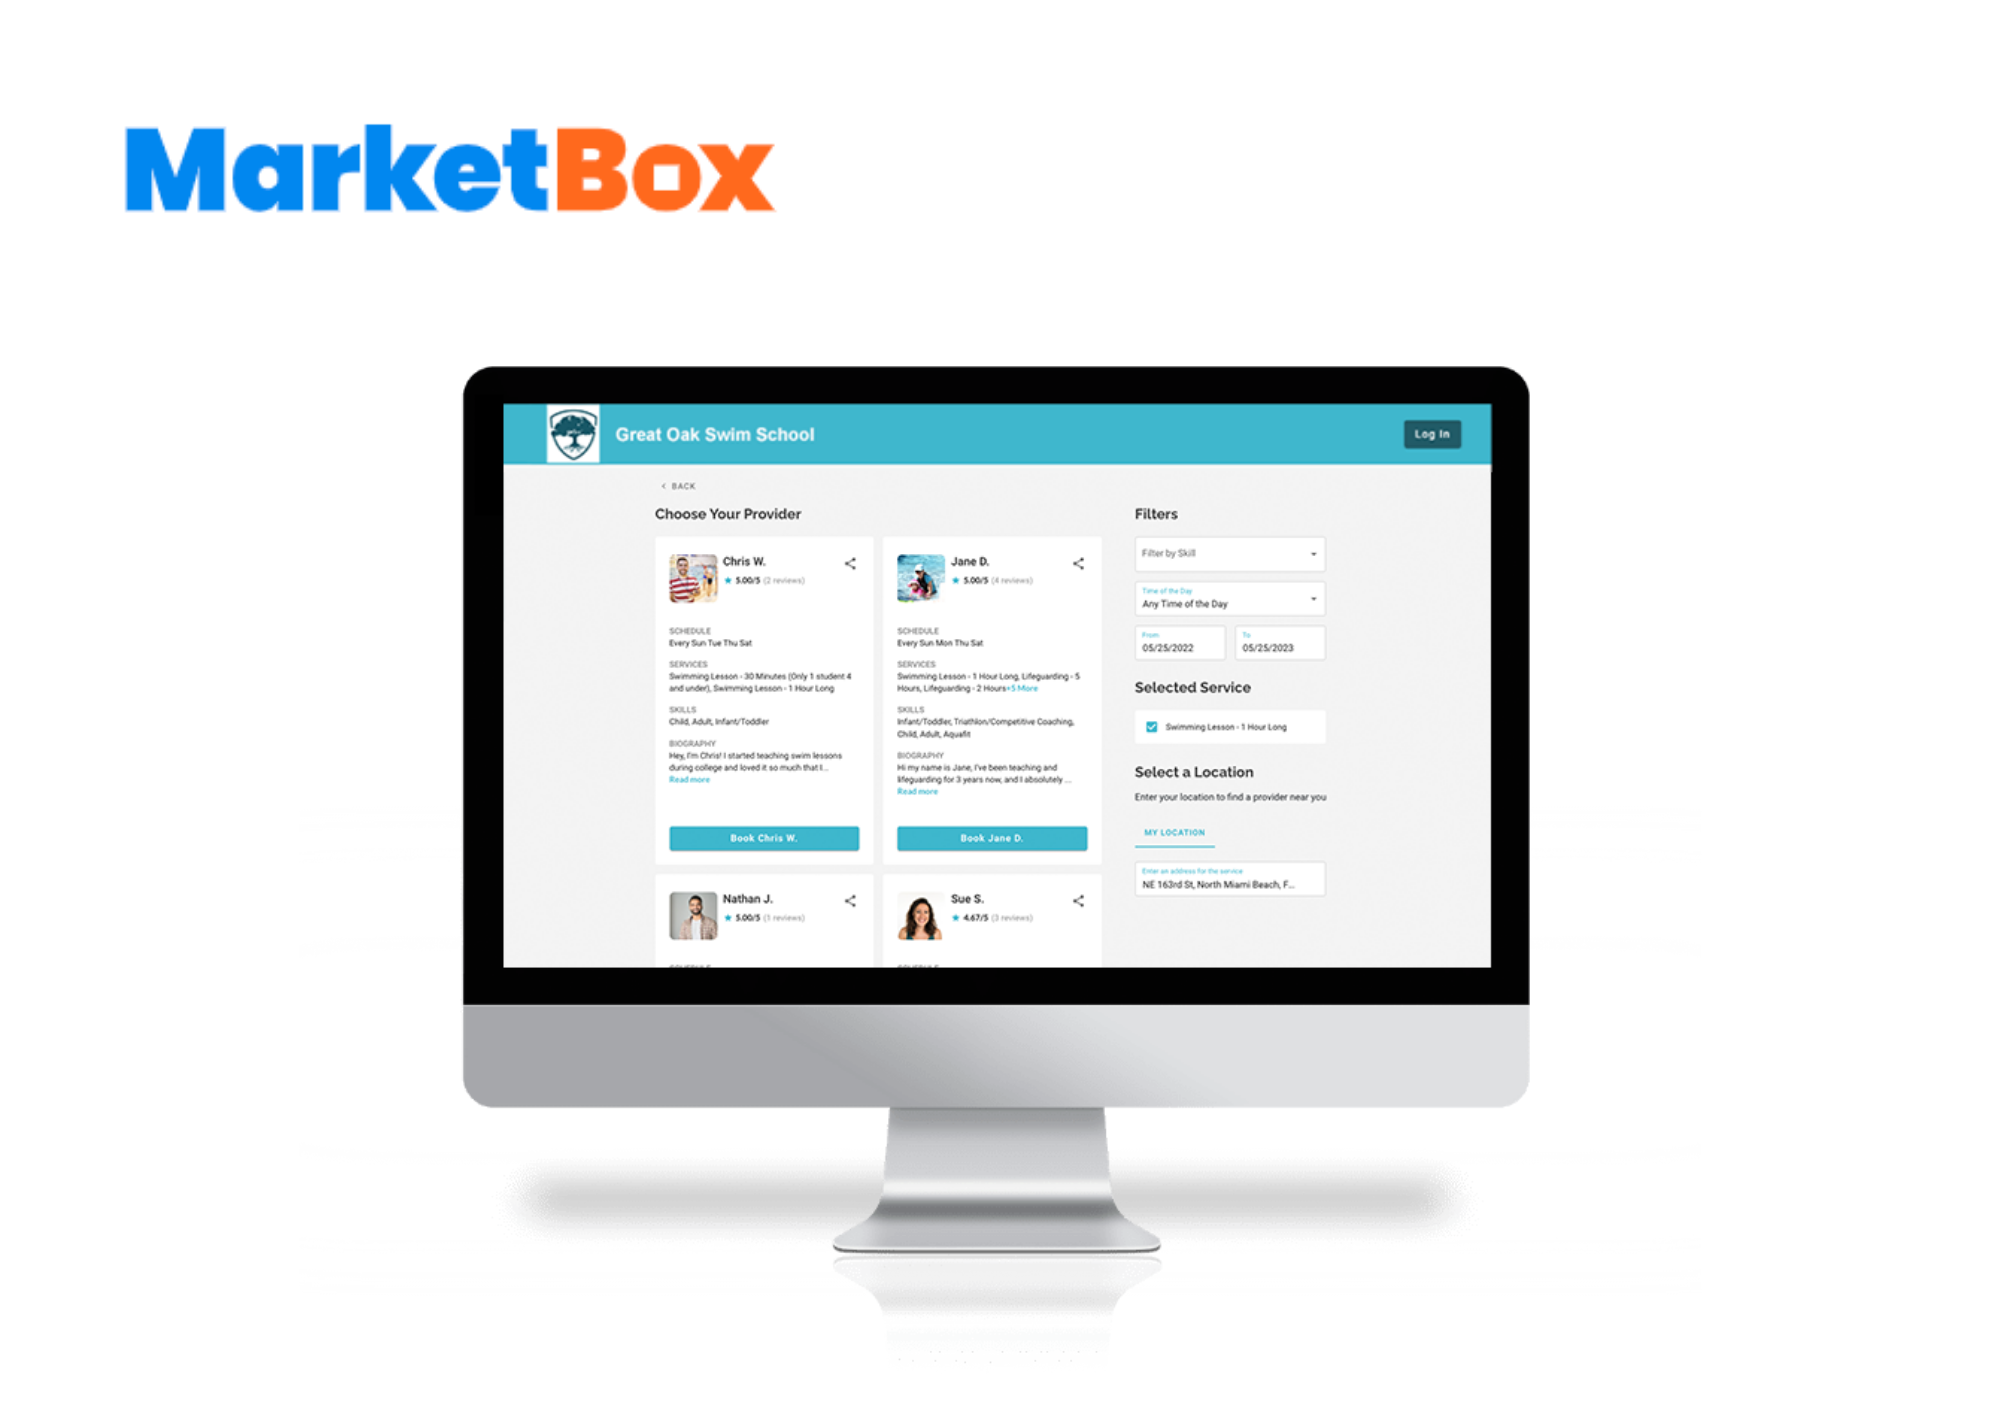 MarketBox Software - Provider Profiles